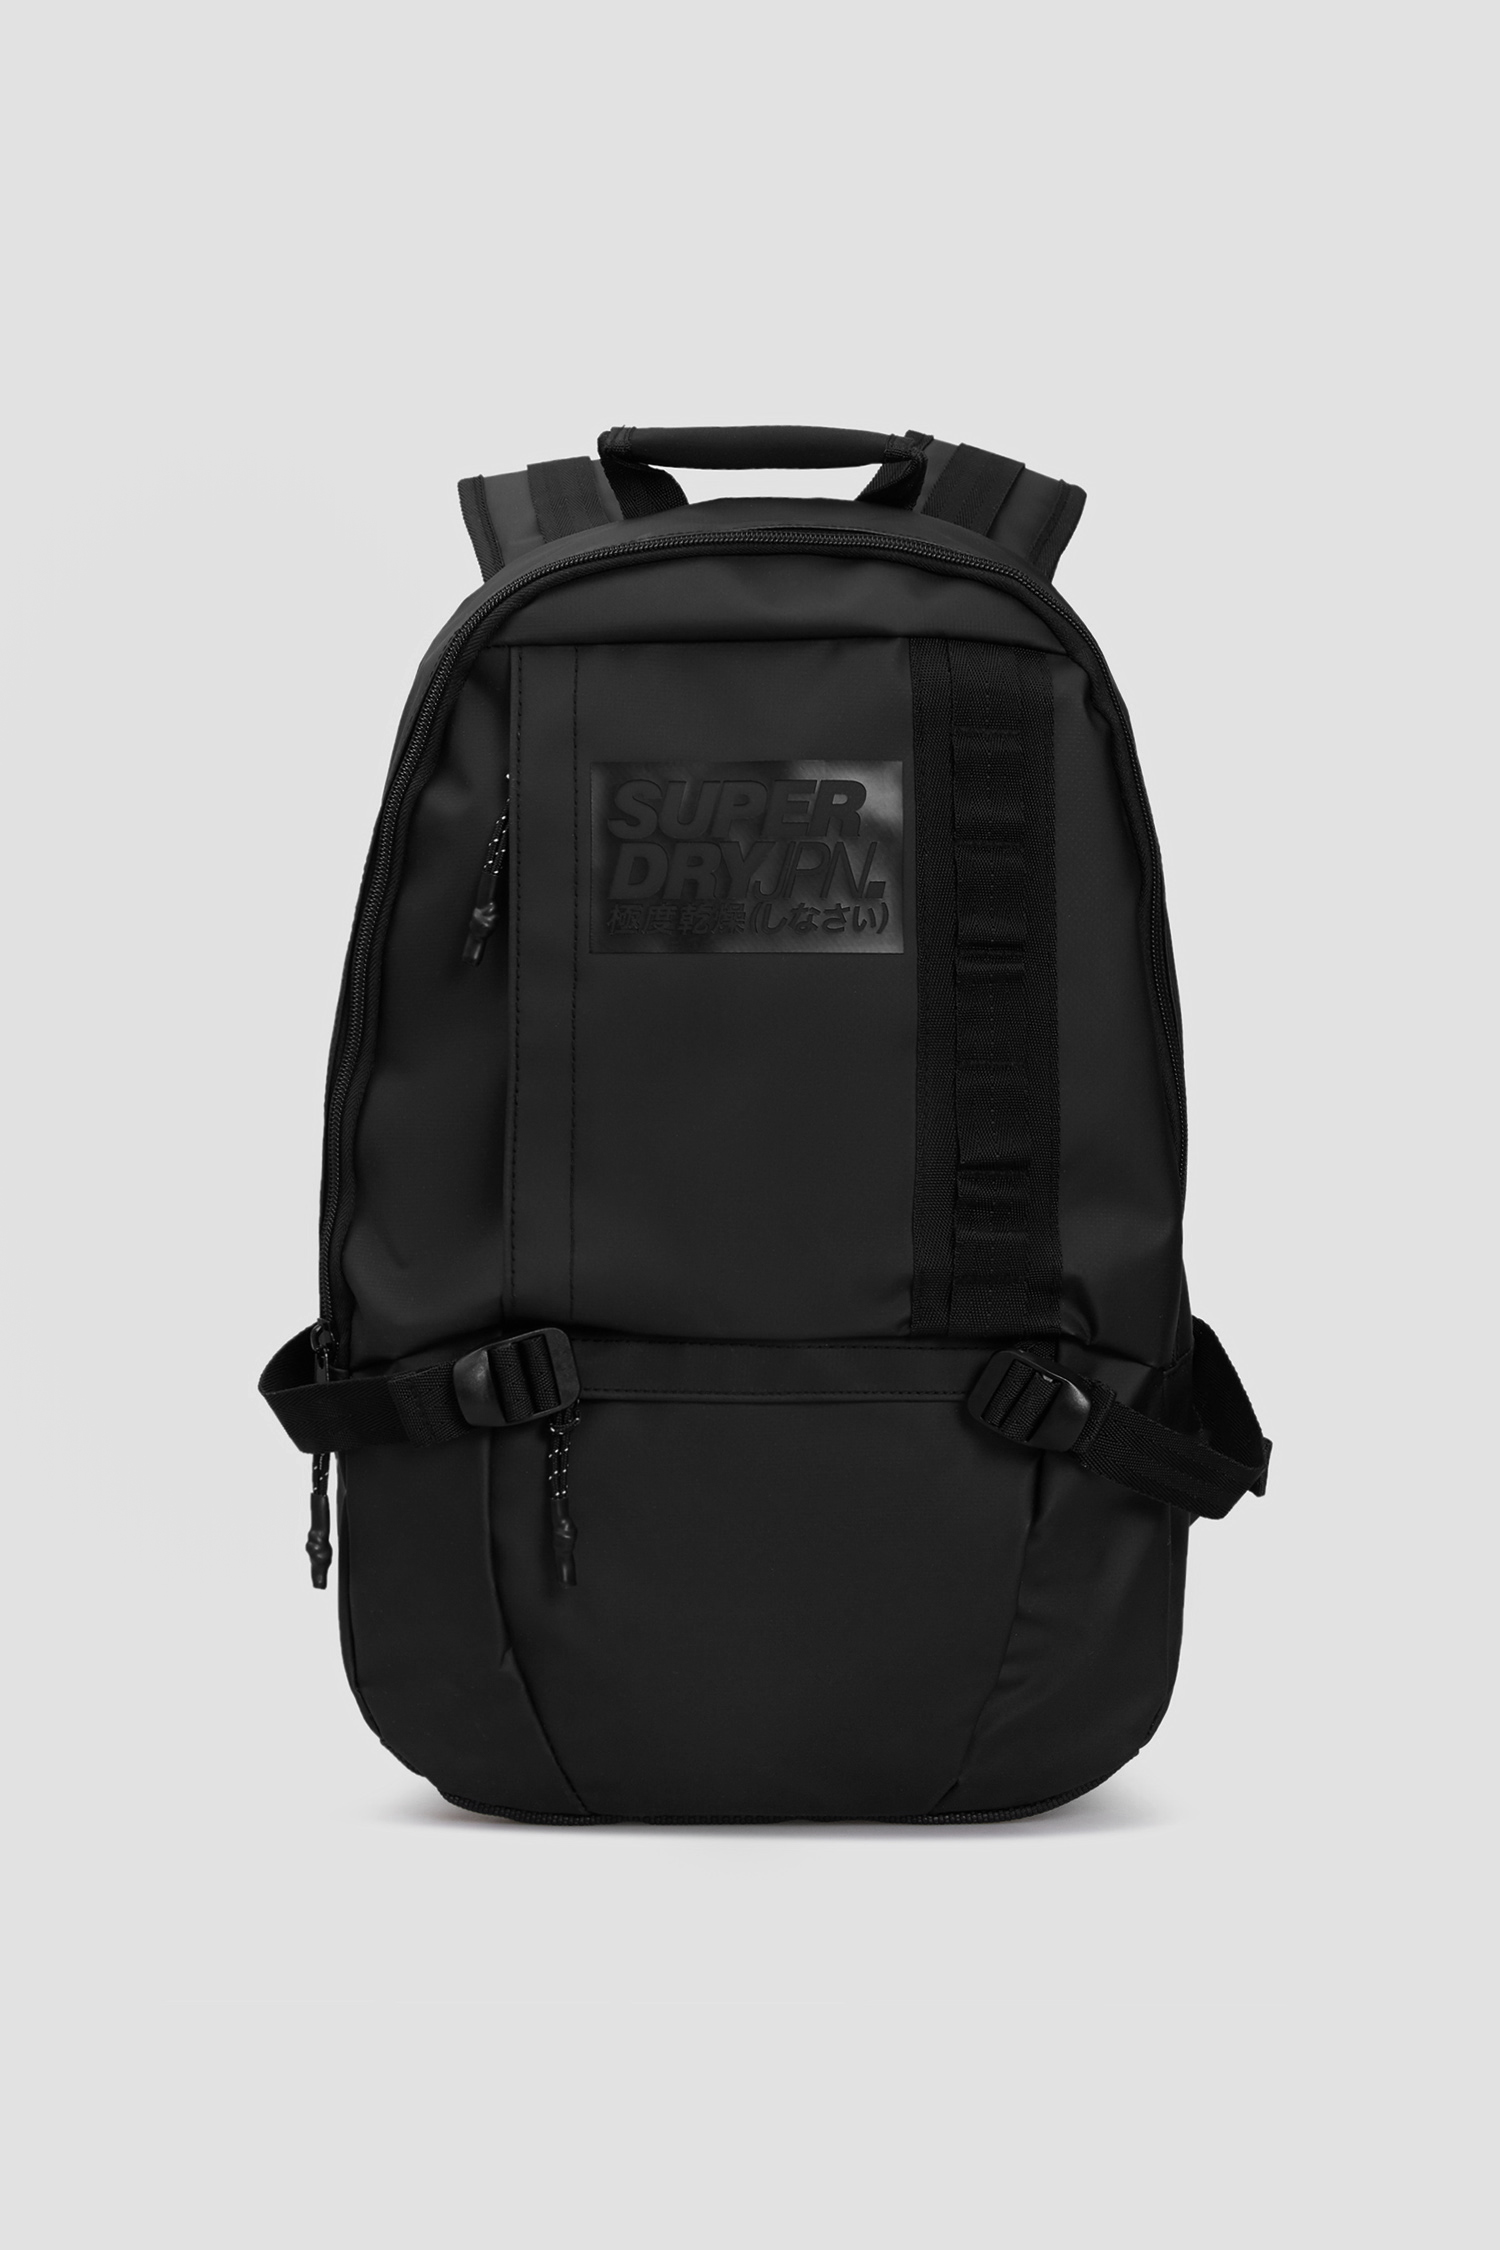 Черный рюкзак для парней SuperDry M9110053A;02A